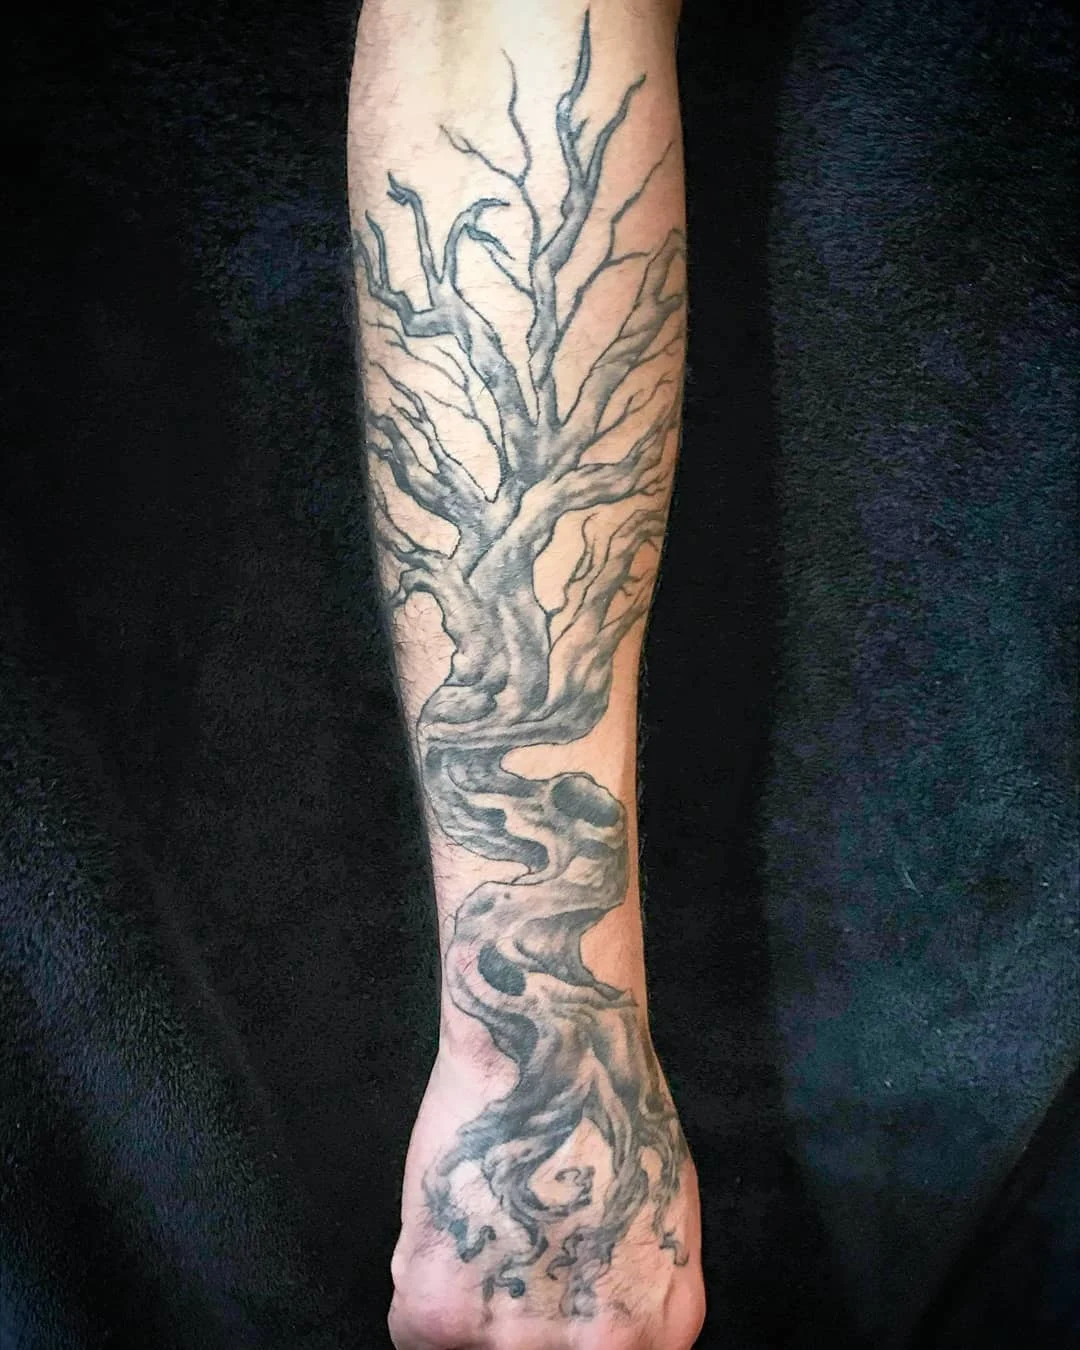 tatuaje de Yggdrasil vikingo, el arbol del mundo